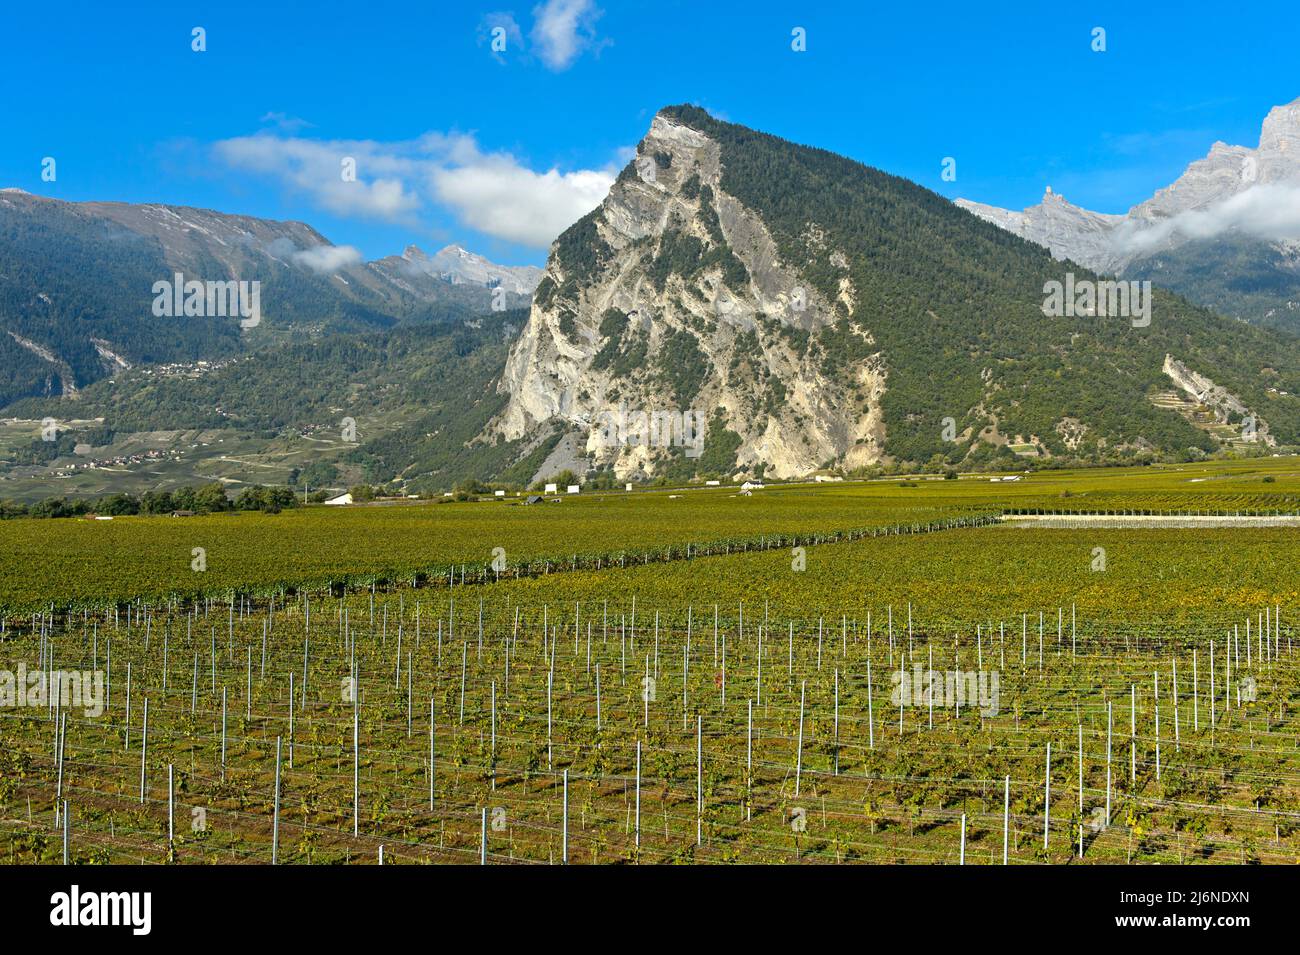 Le pic d'Ardeve surplombe la région viticole de Leytron, Leytron, Valais, Suisse Banque D'Images